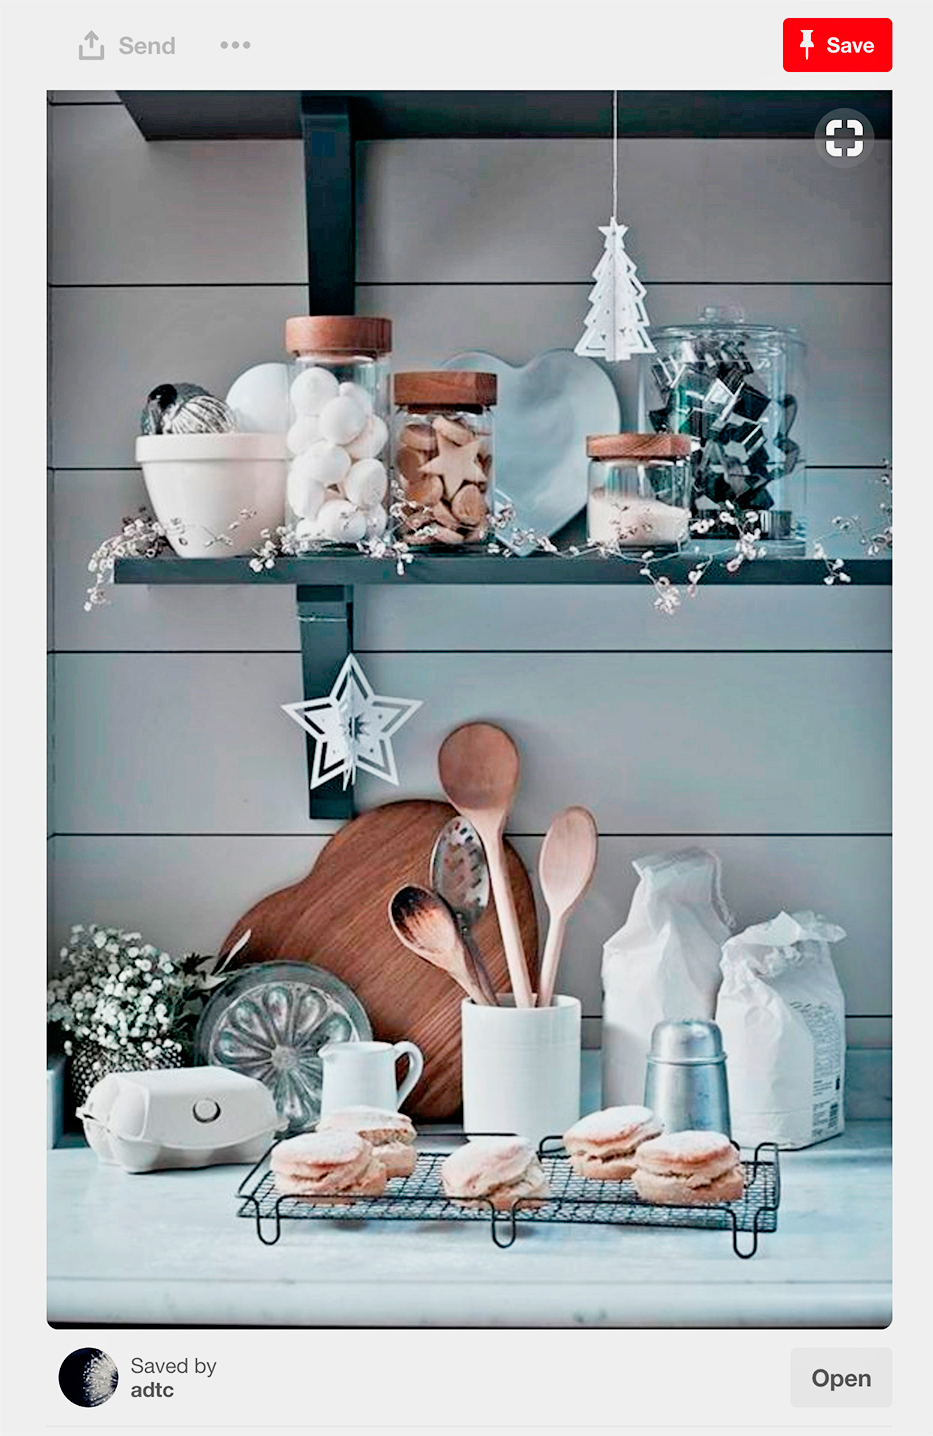 Encimera y estante de cocina decorado con detalles navideños